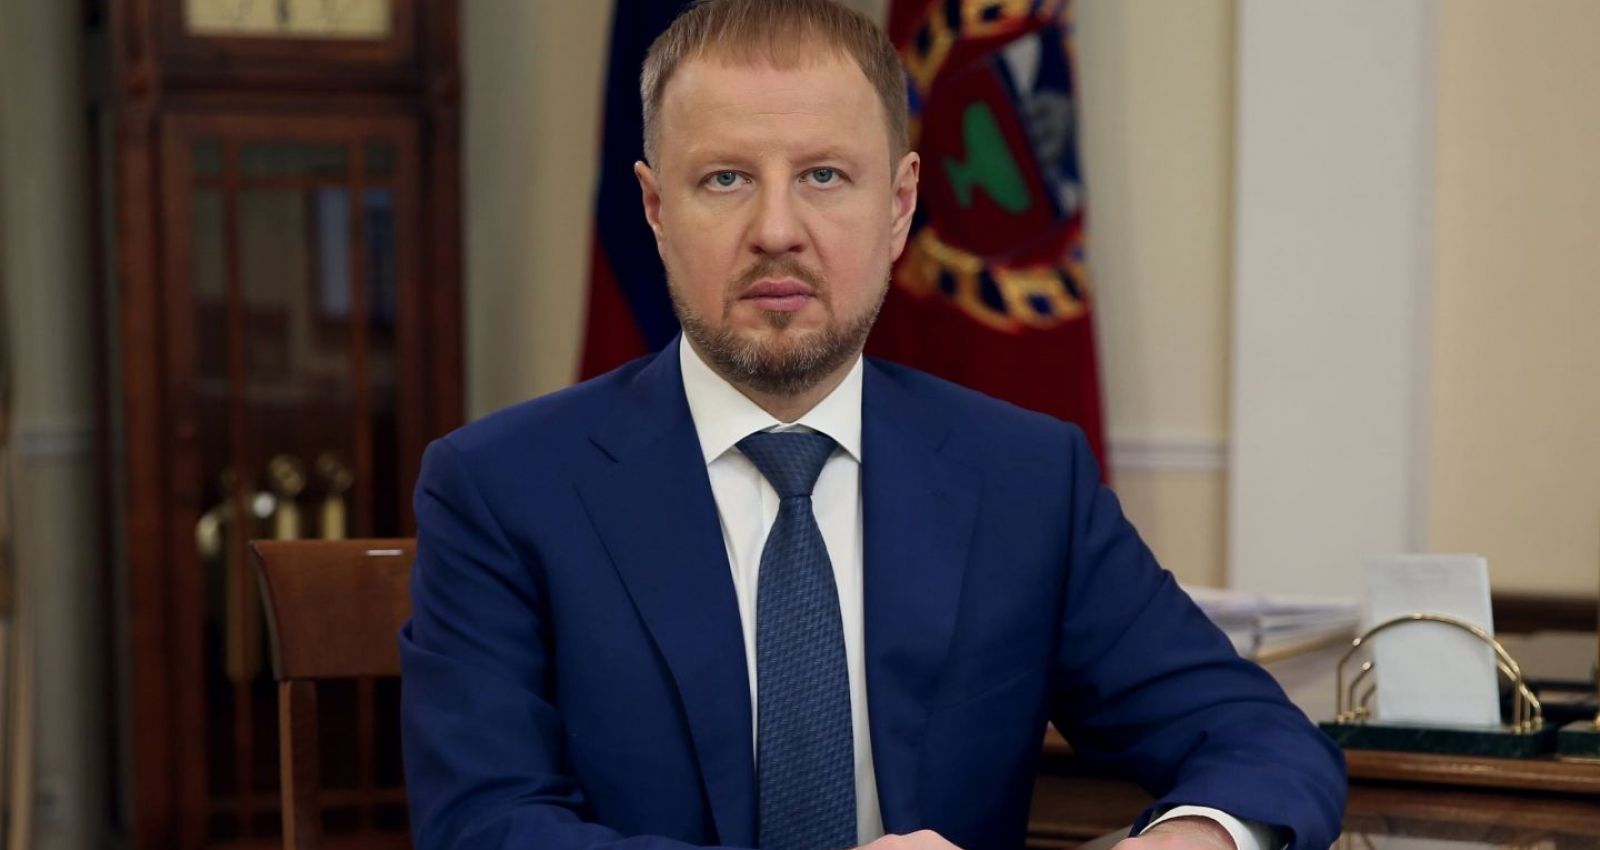 Бывший губернатор алтайского края. Томенко губернатор Алтайского края.